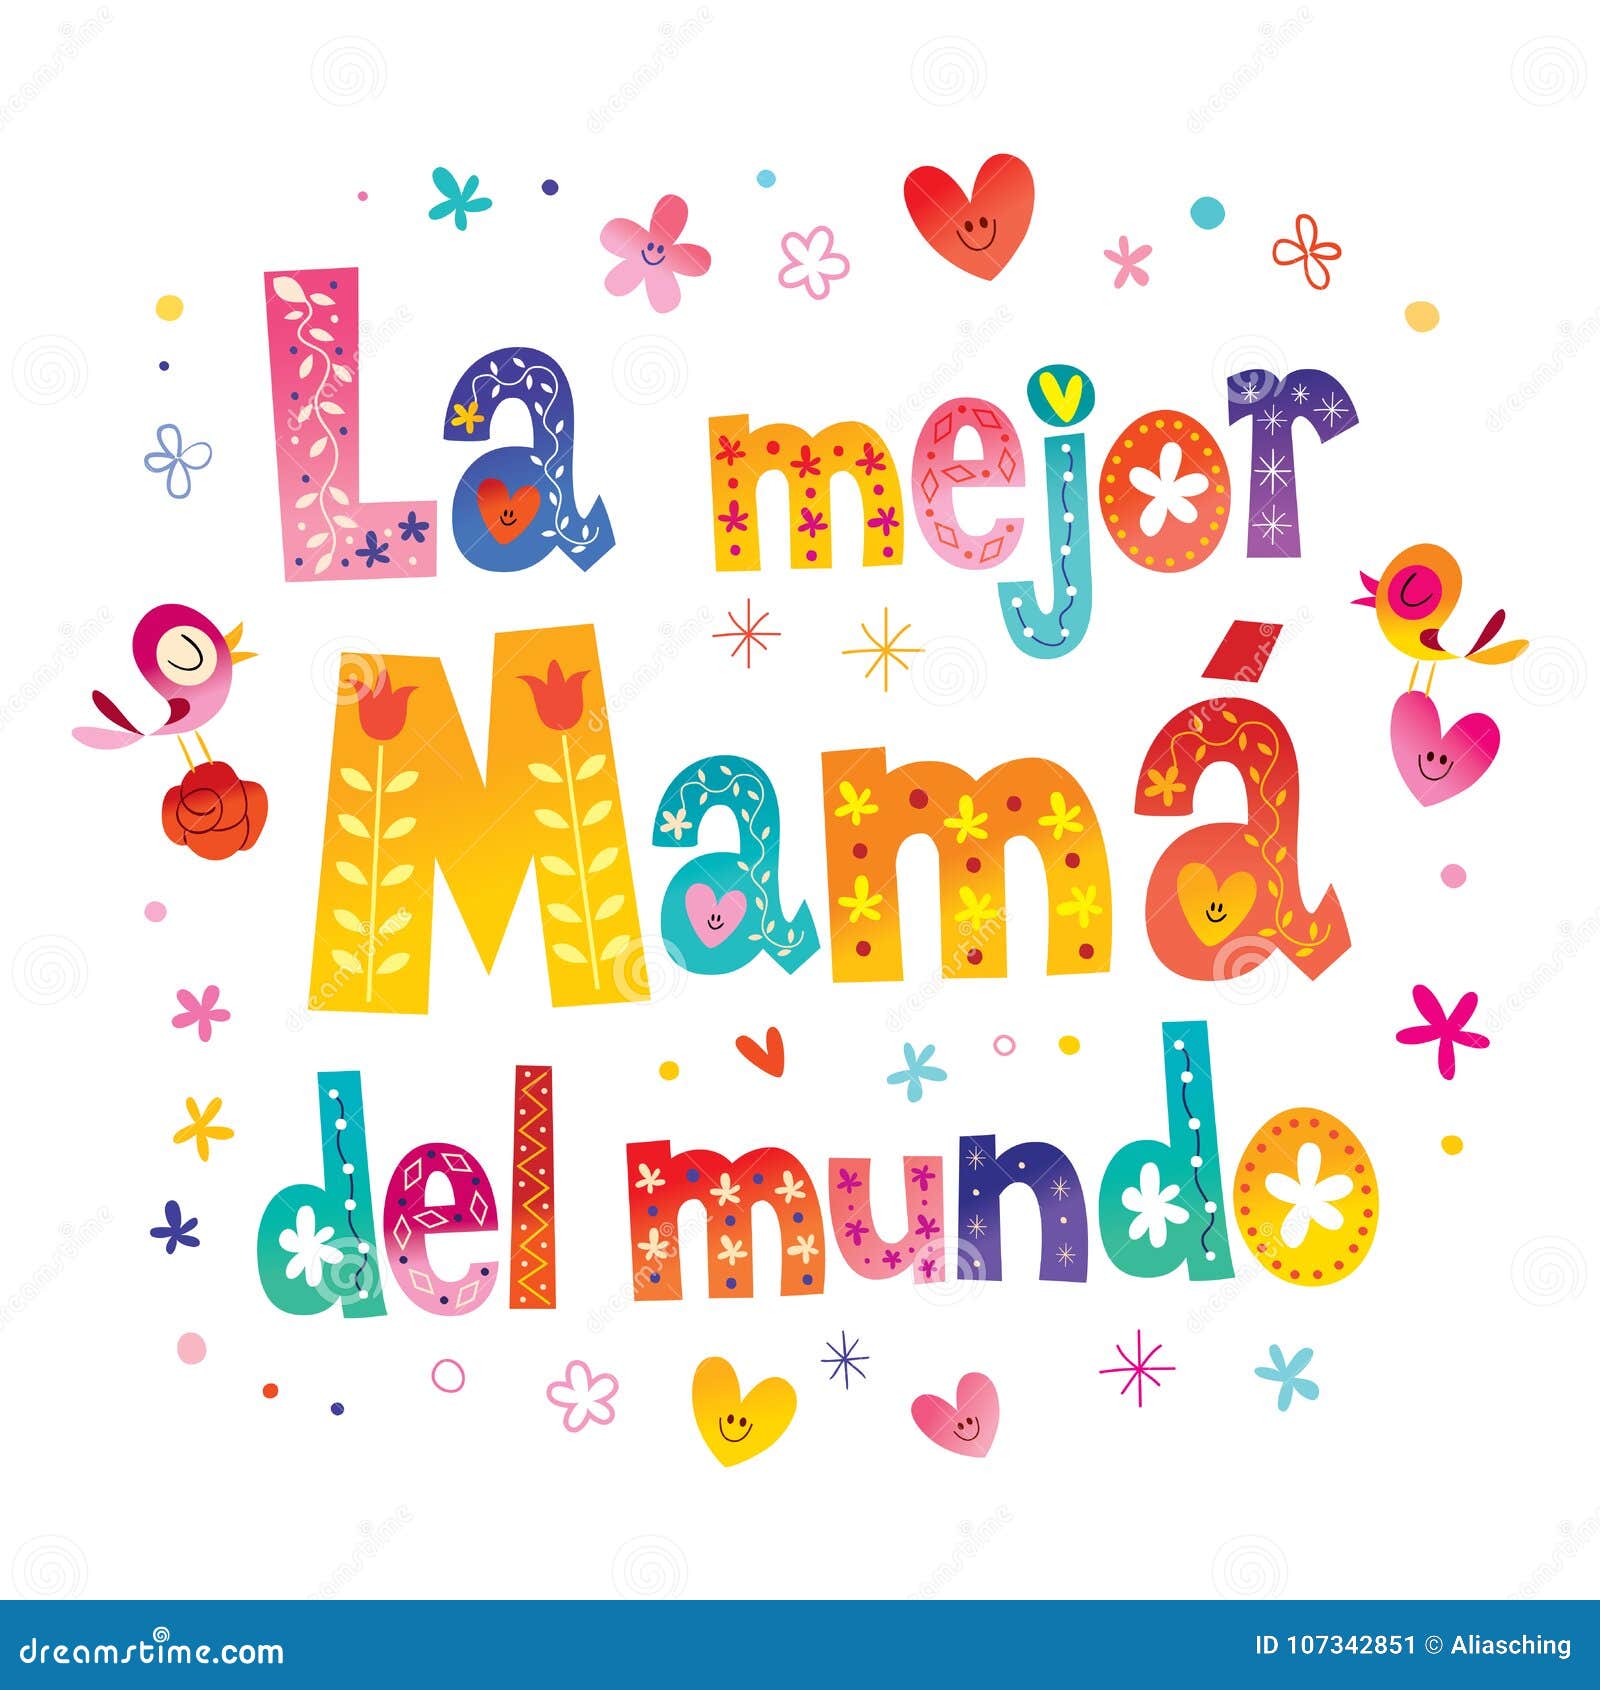 la mejor mamÃÂ¡ del mundo - the best mom in the world